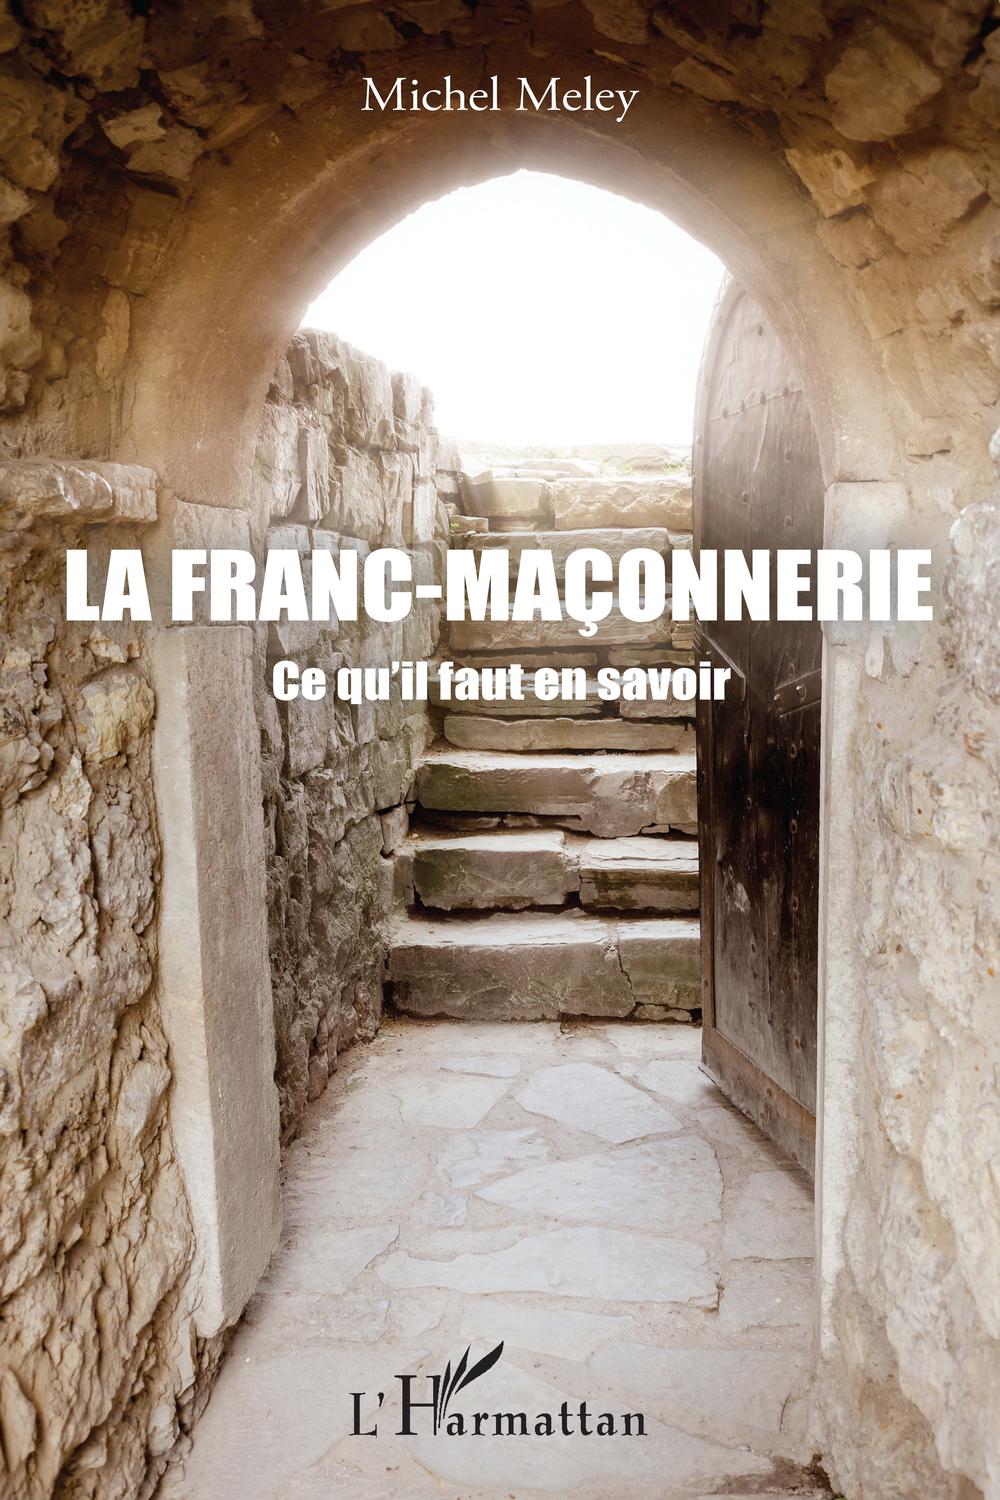 La Franc-maçonnerie - Michel Meley